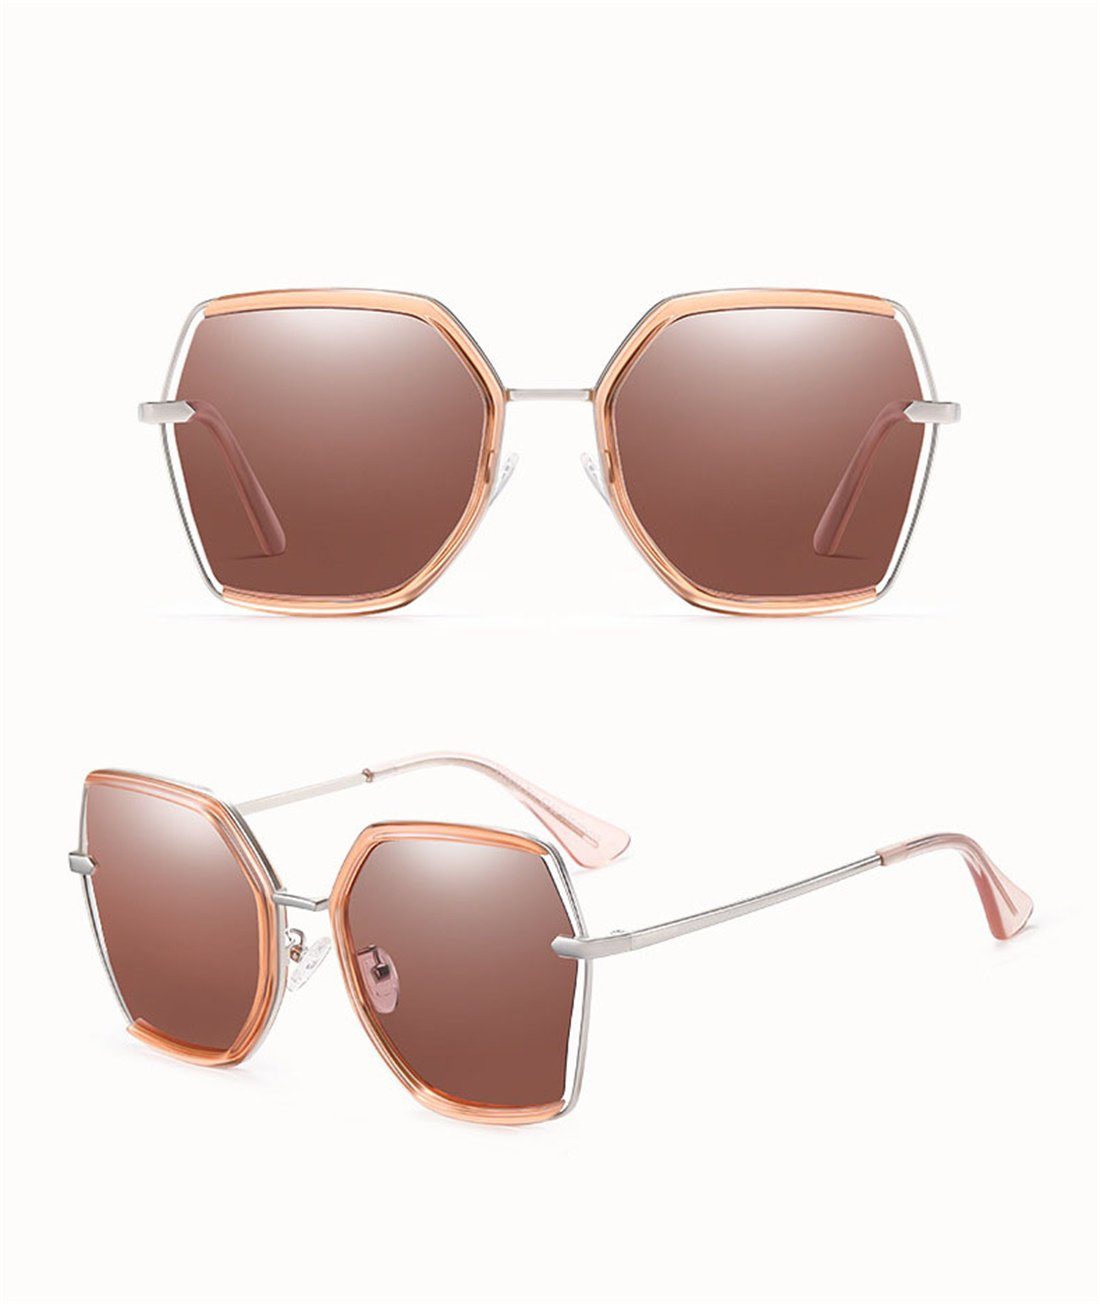 Sonnenbrille Sonnenbrille, Braun polarisierte DÖRÖY Sonnenschirme Sonnenbrille Damen Mode Box